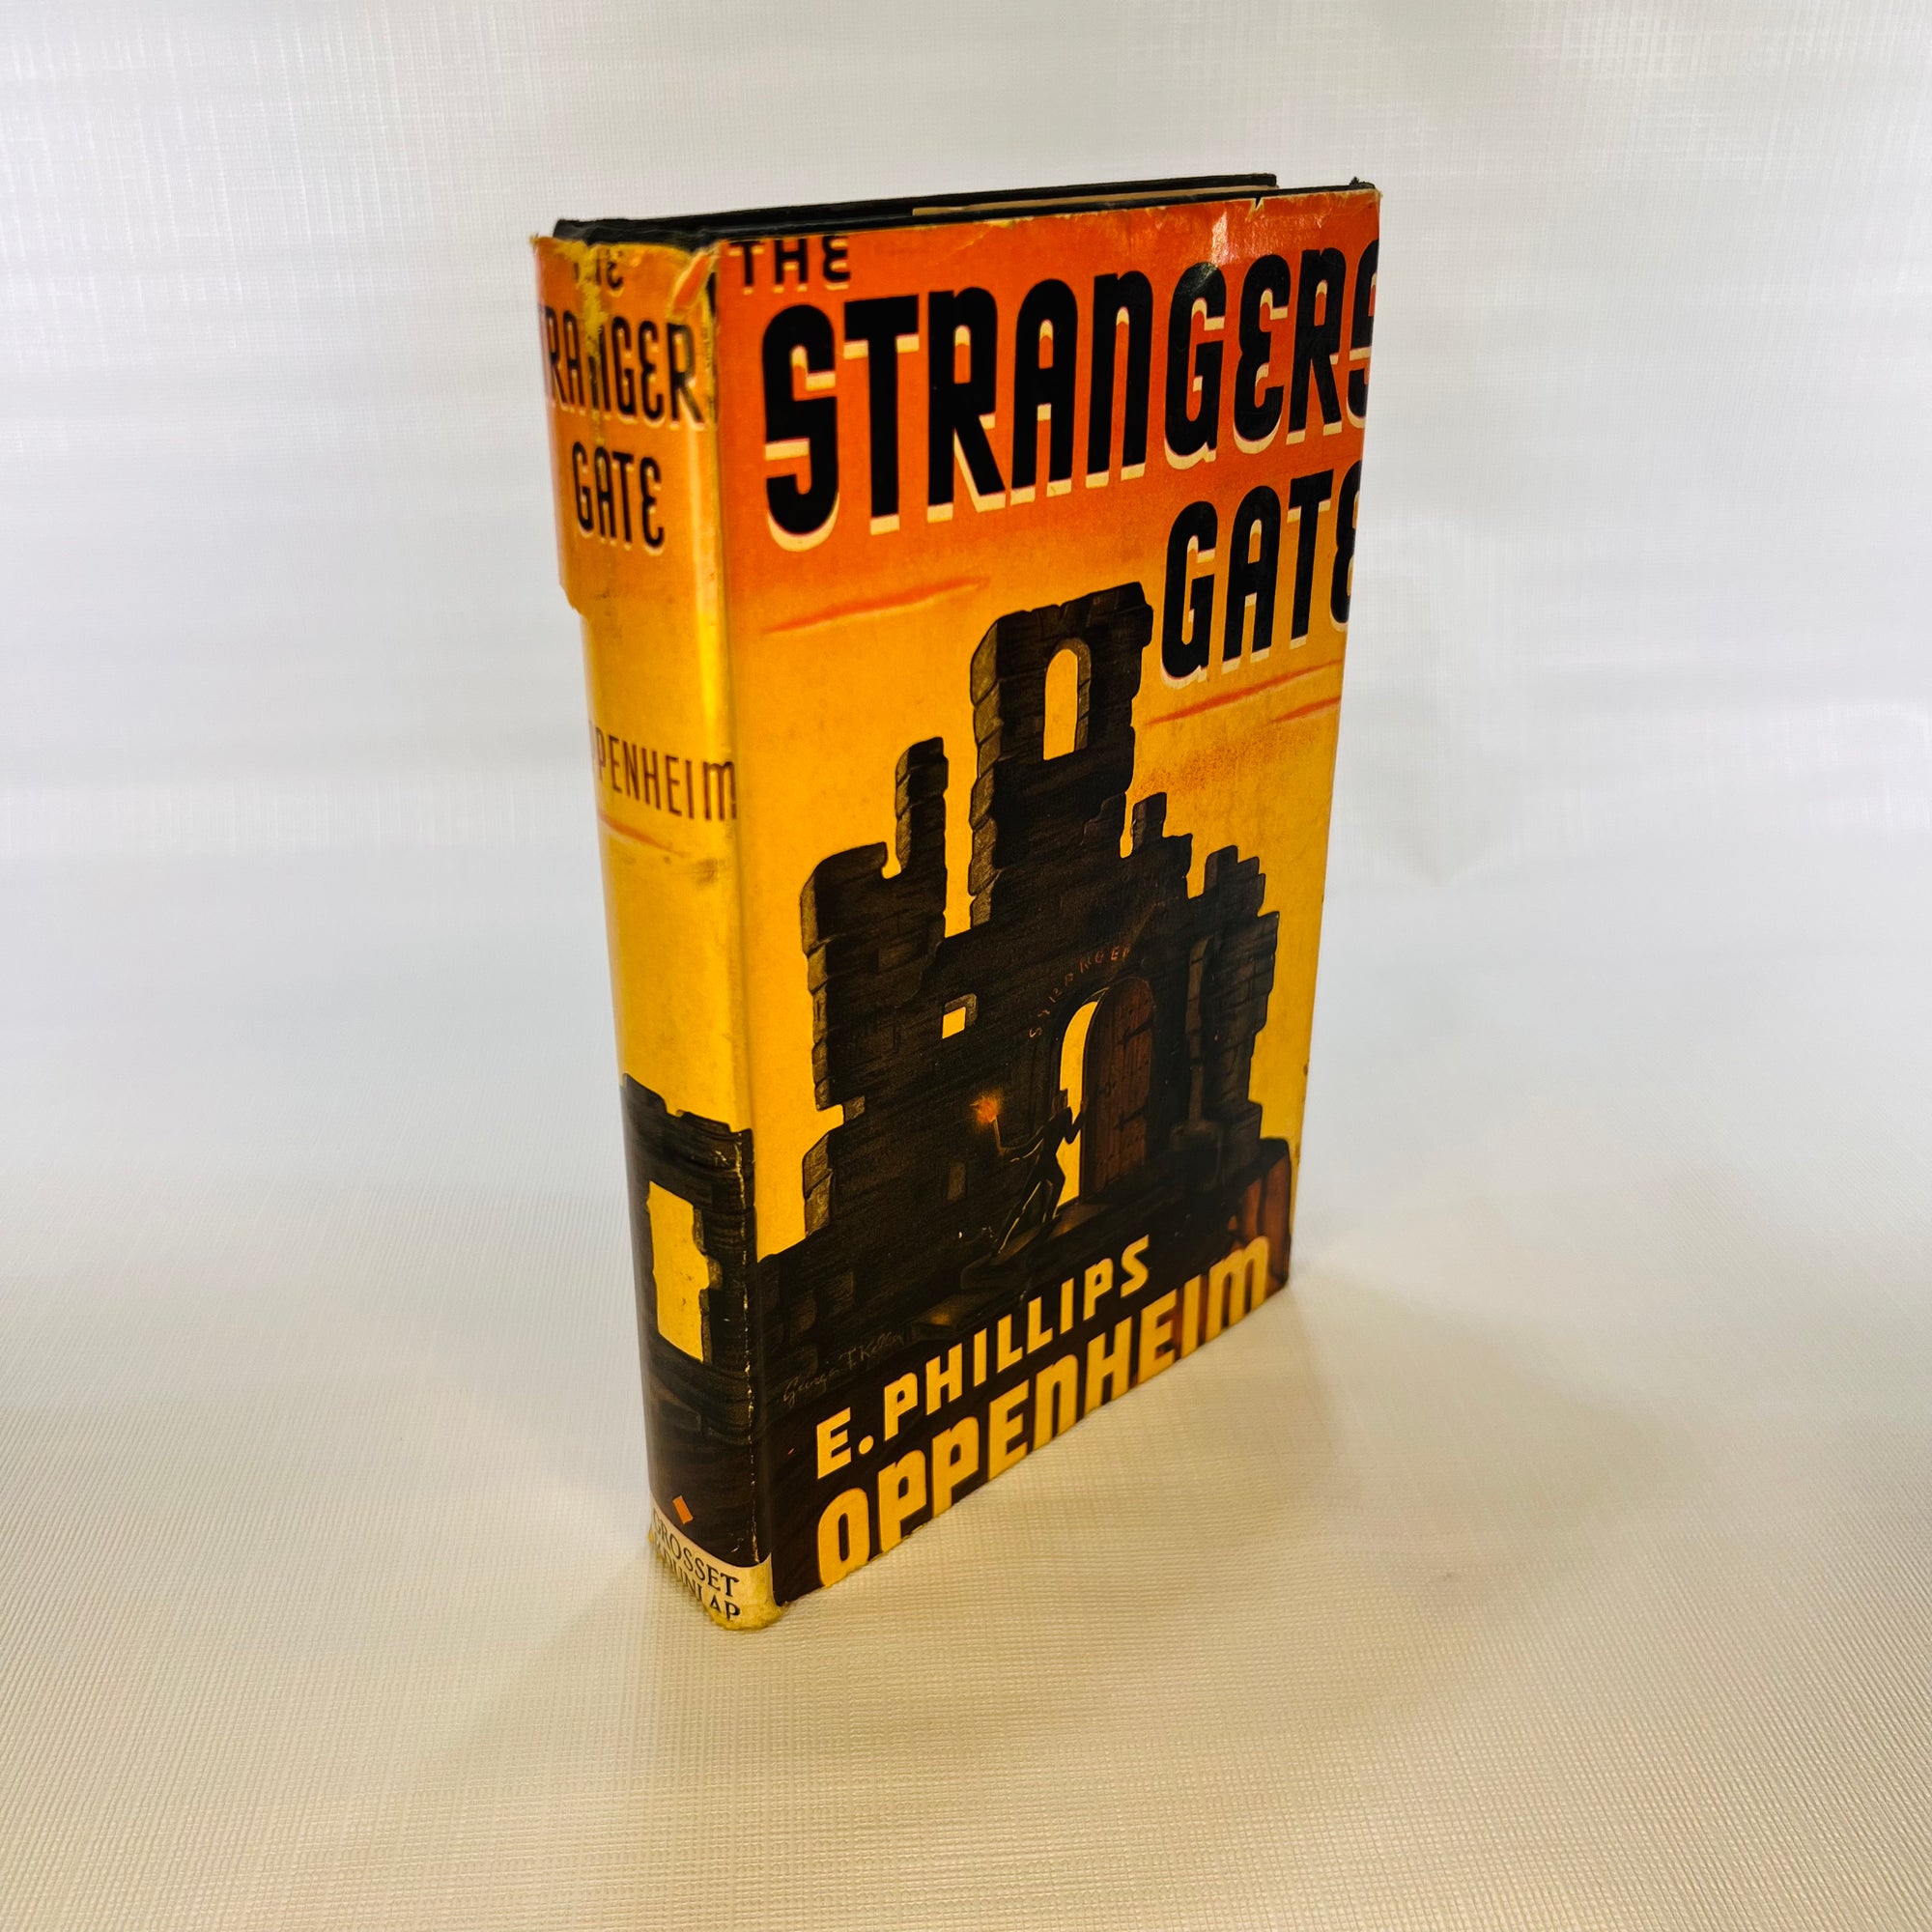 The Strange Gate by E. Phillips Oppenheim 1939 Grosset & Dunlap